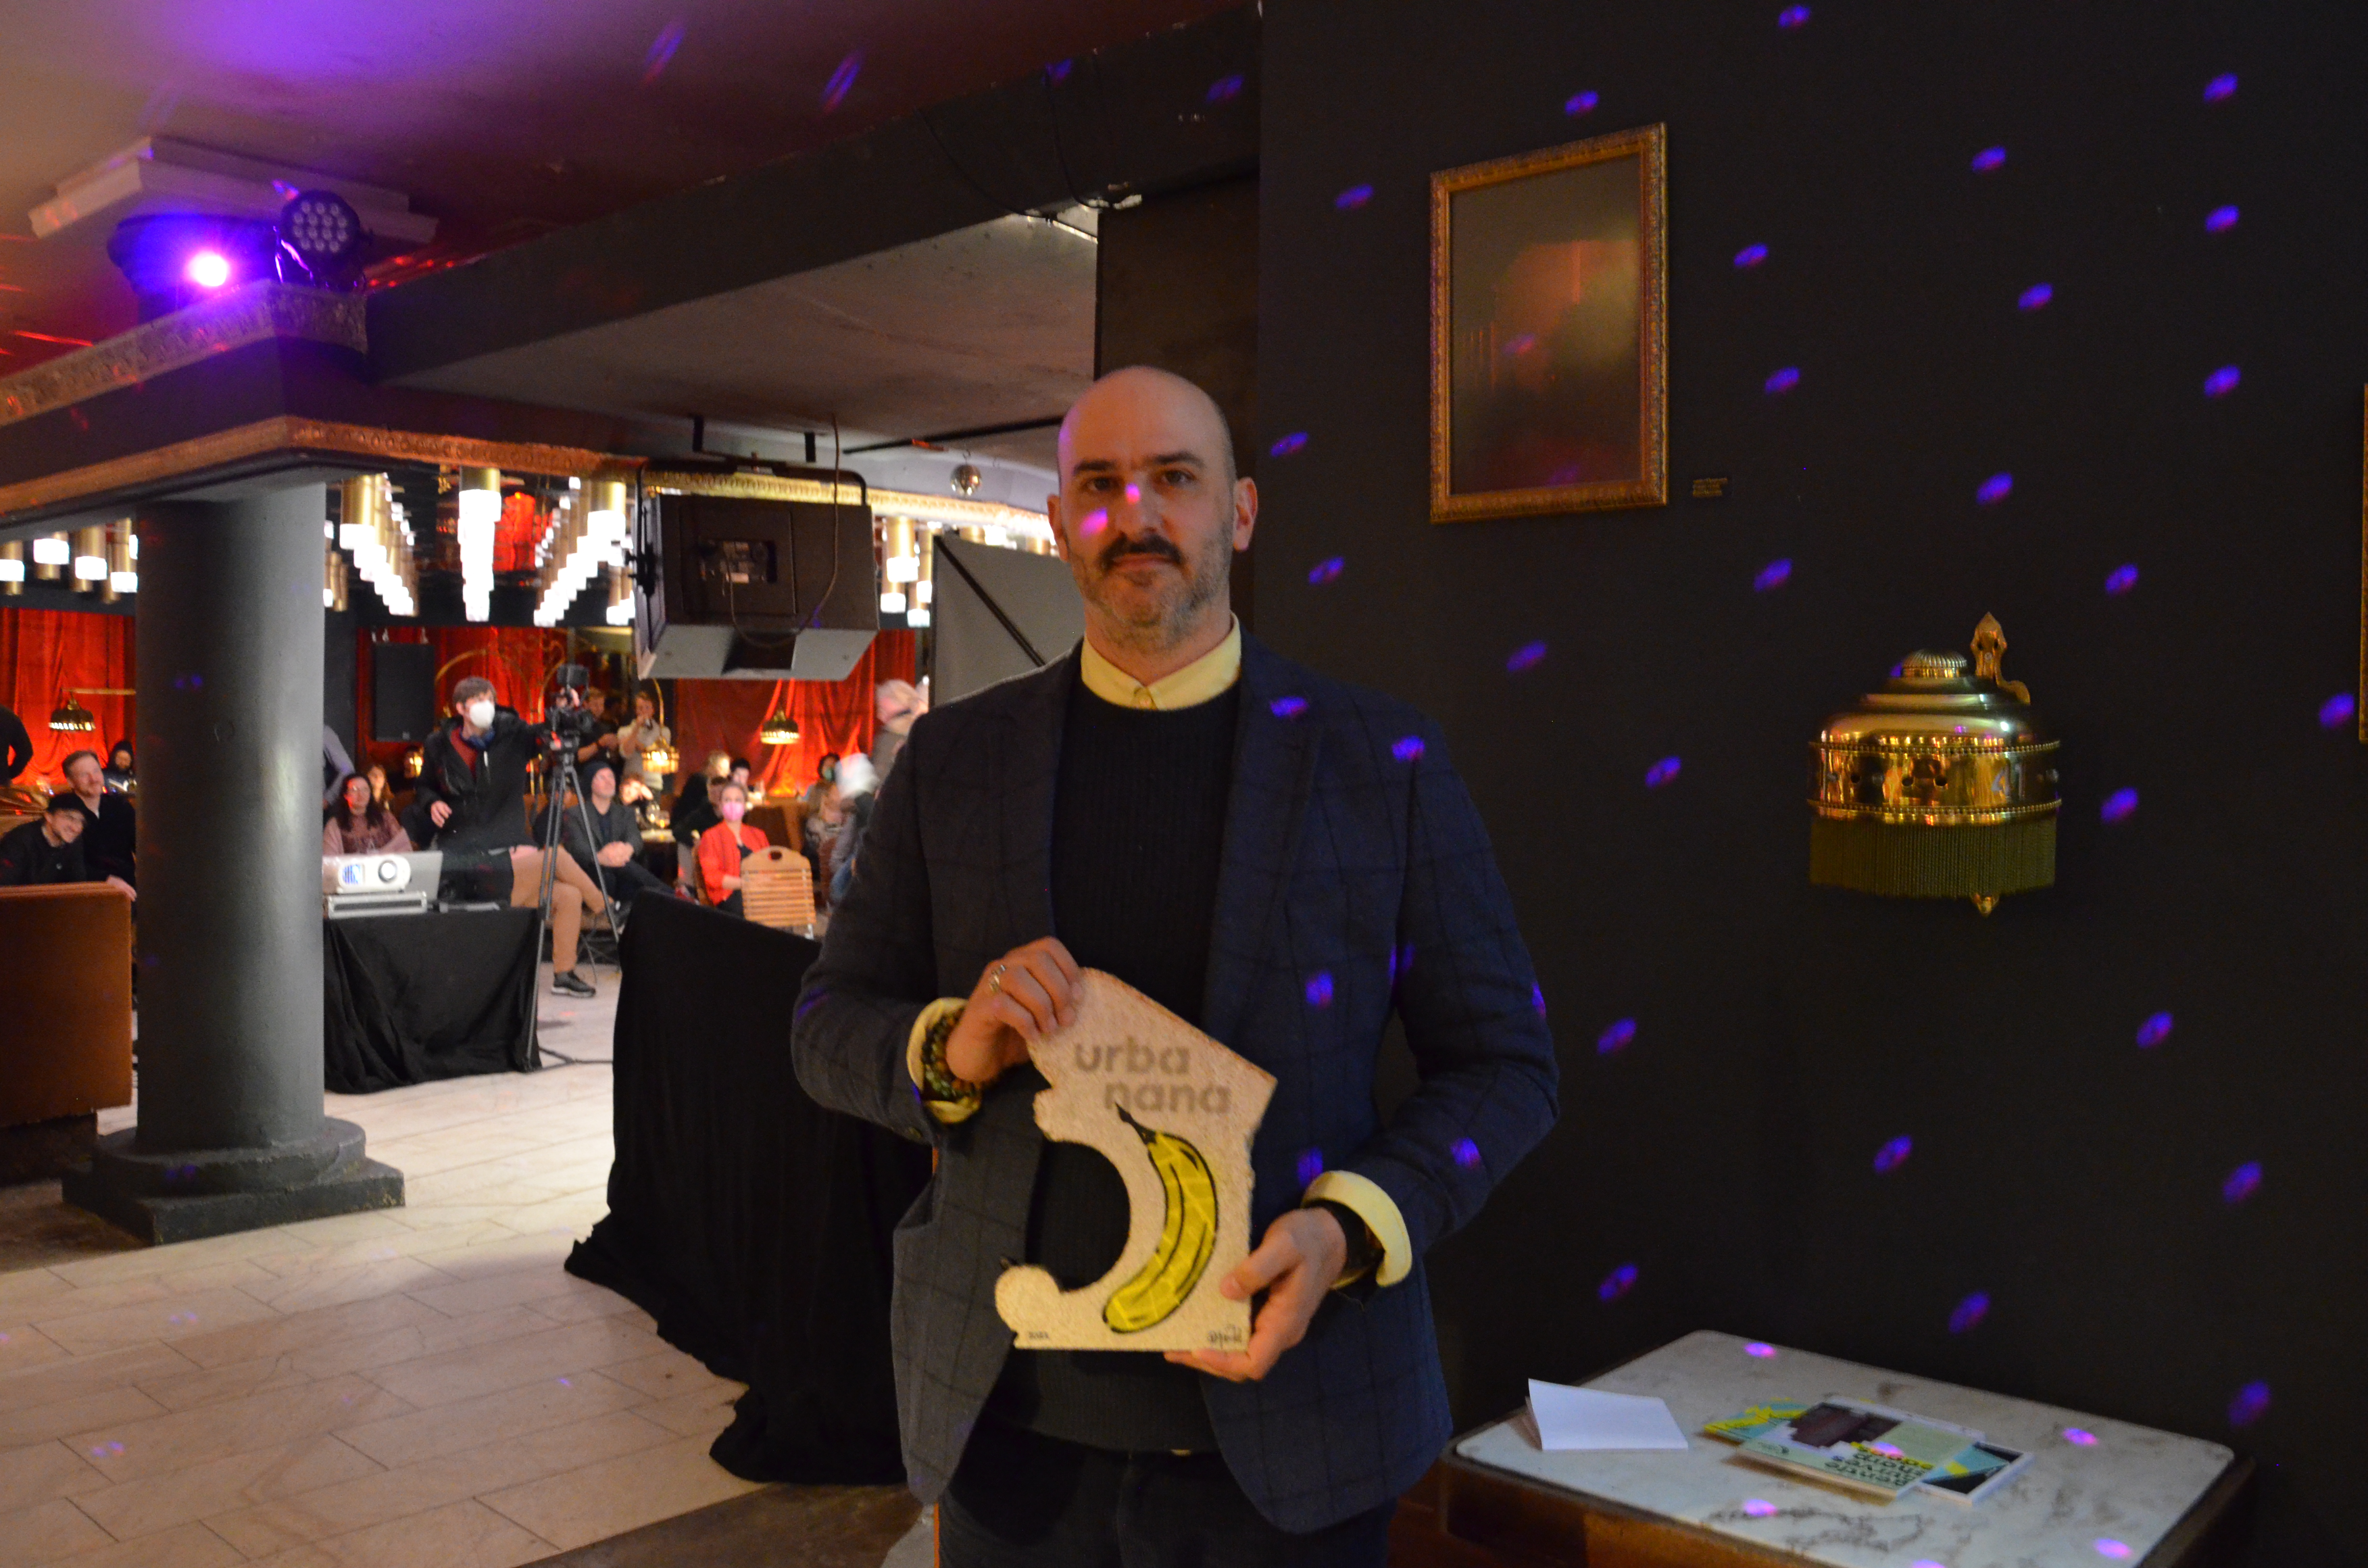 Der Macher der App EcoHopper, die zu nachhaltigen Geschäften und Einrichtungen führt, hält einen vom Kölner Künstler Thomas Baumgärtel gestalteten urbanana-Award in der Hand. 